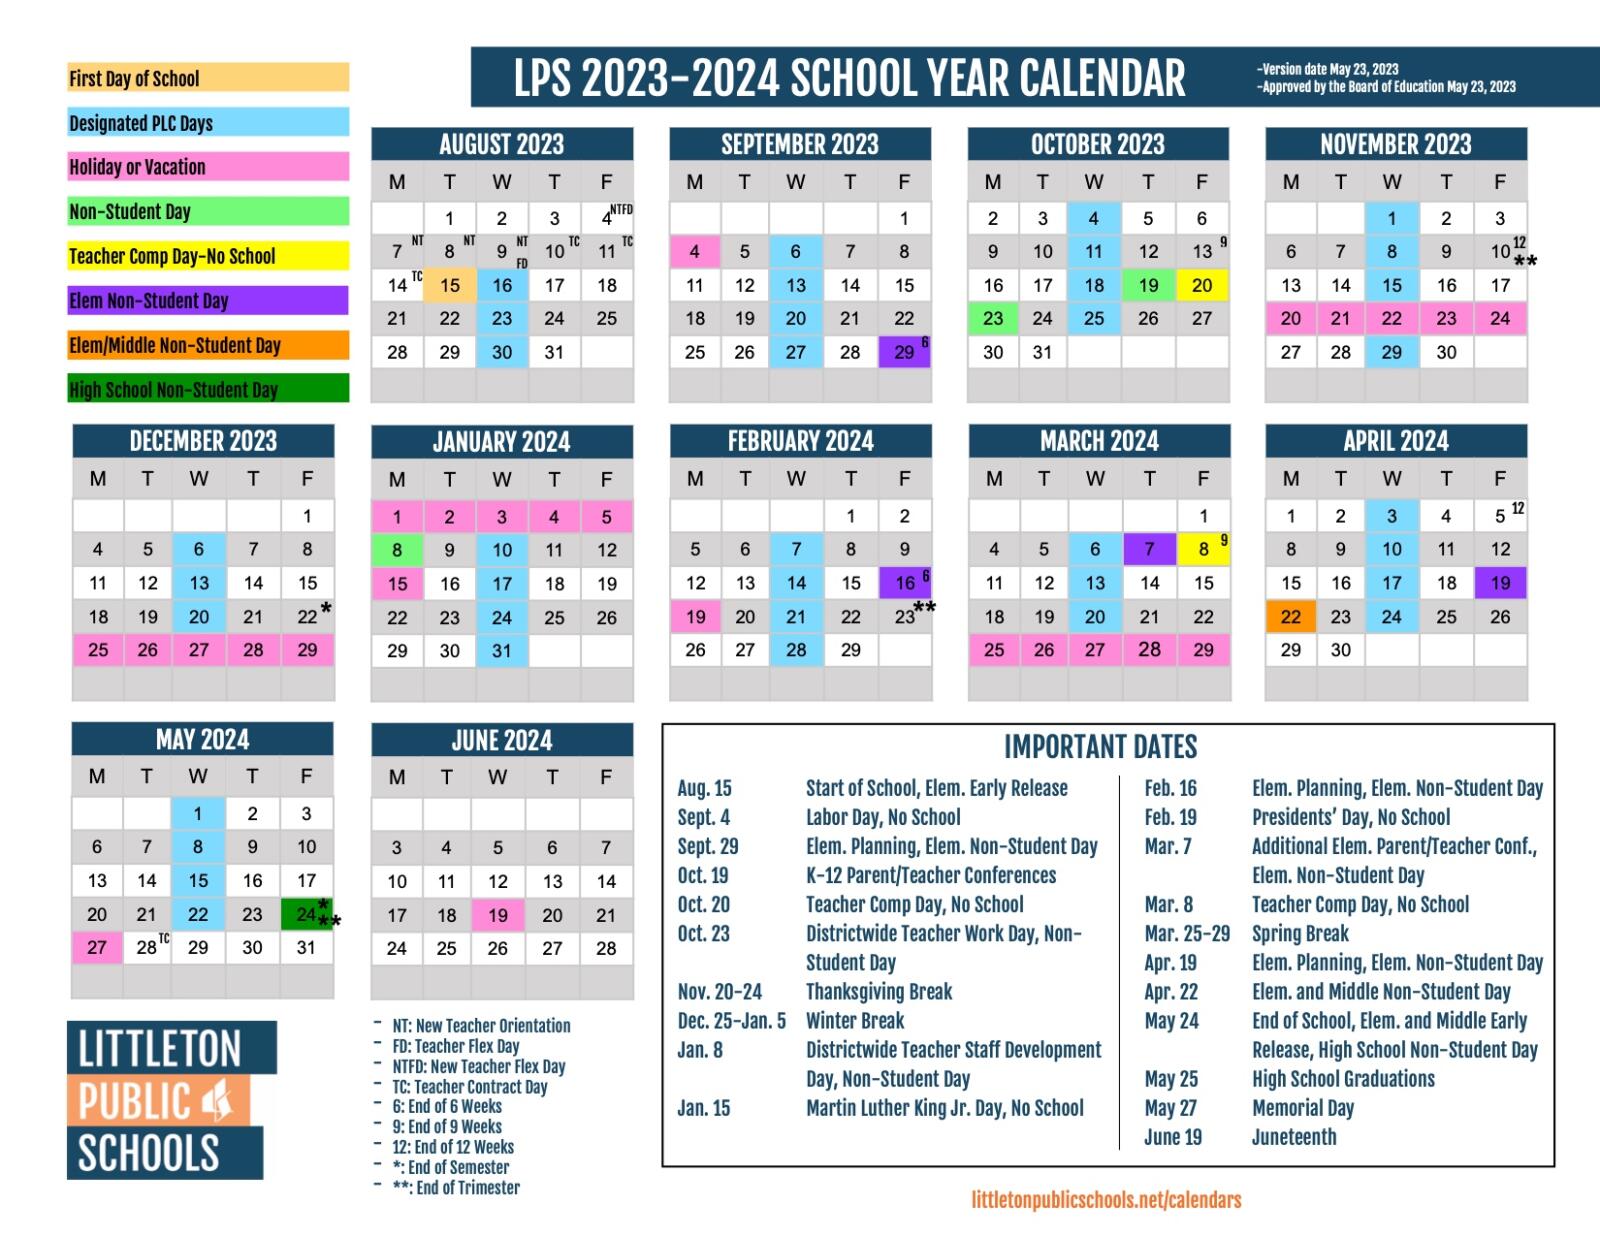 LPS school calendar 2023-2024